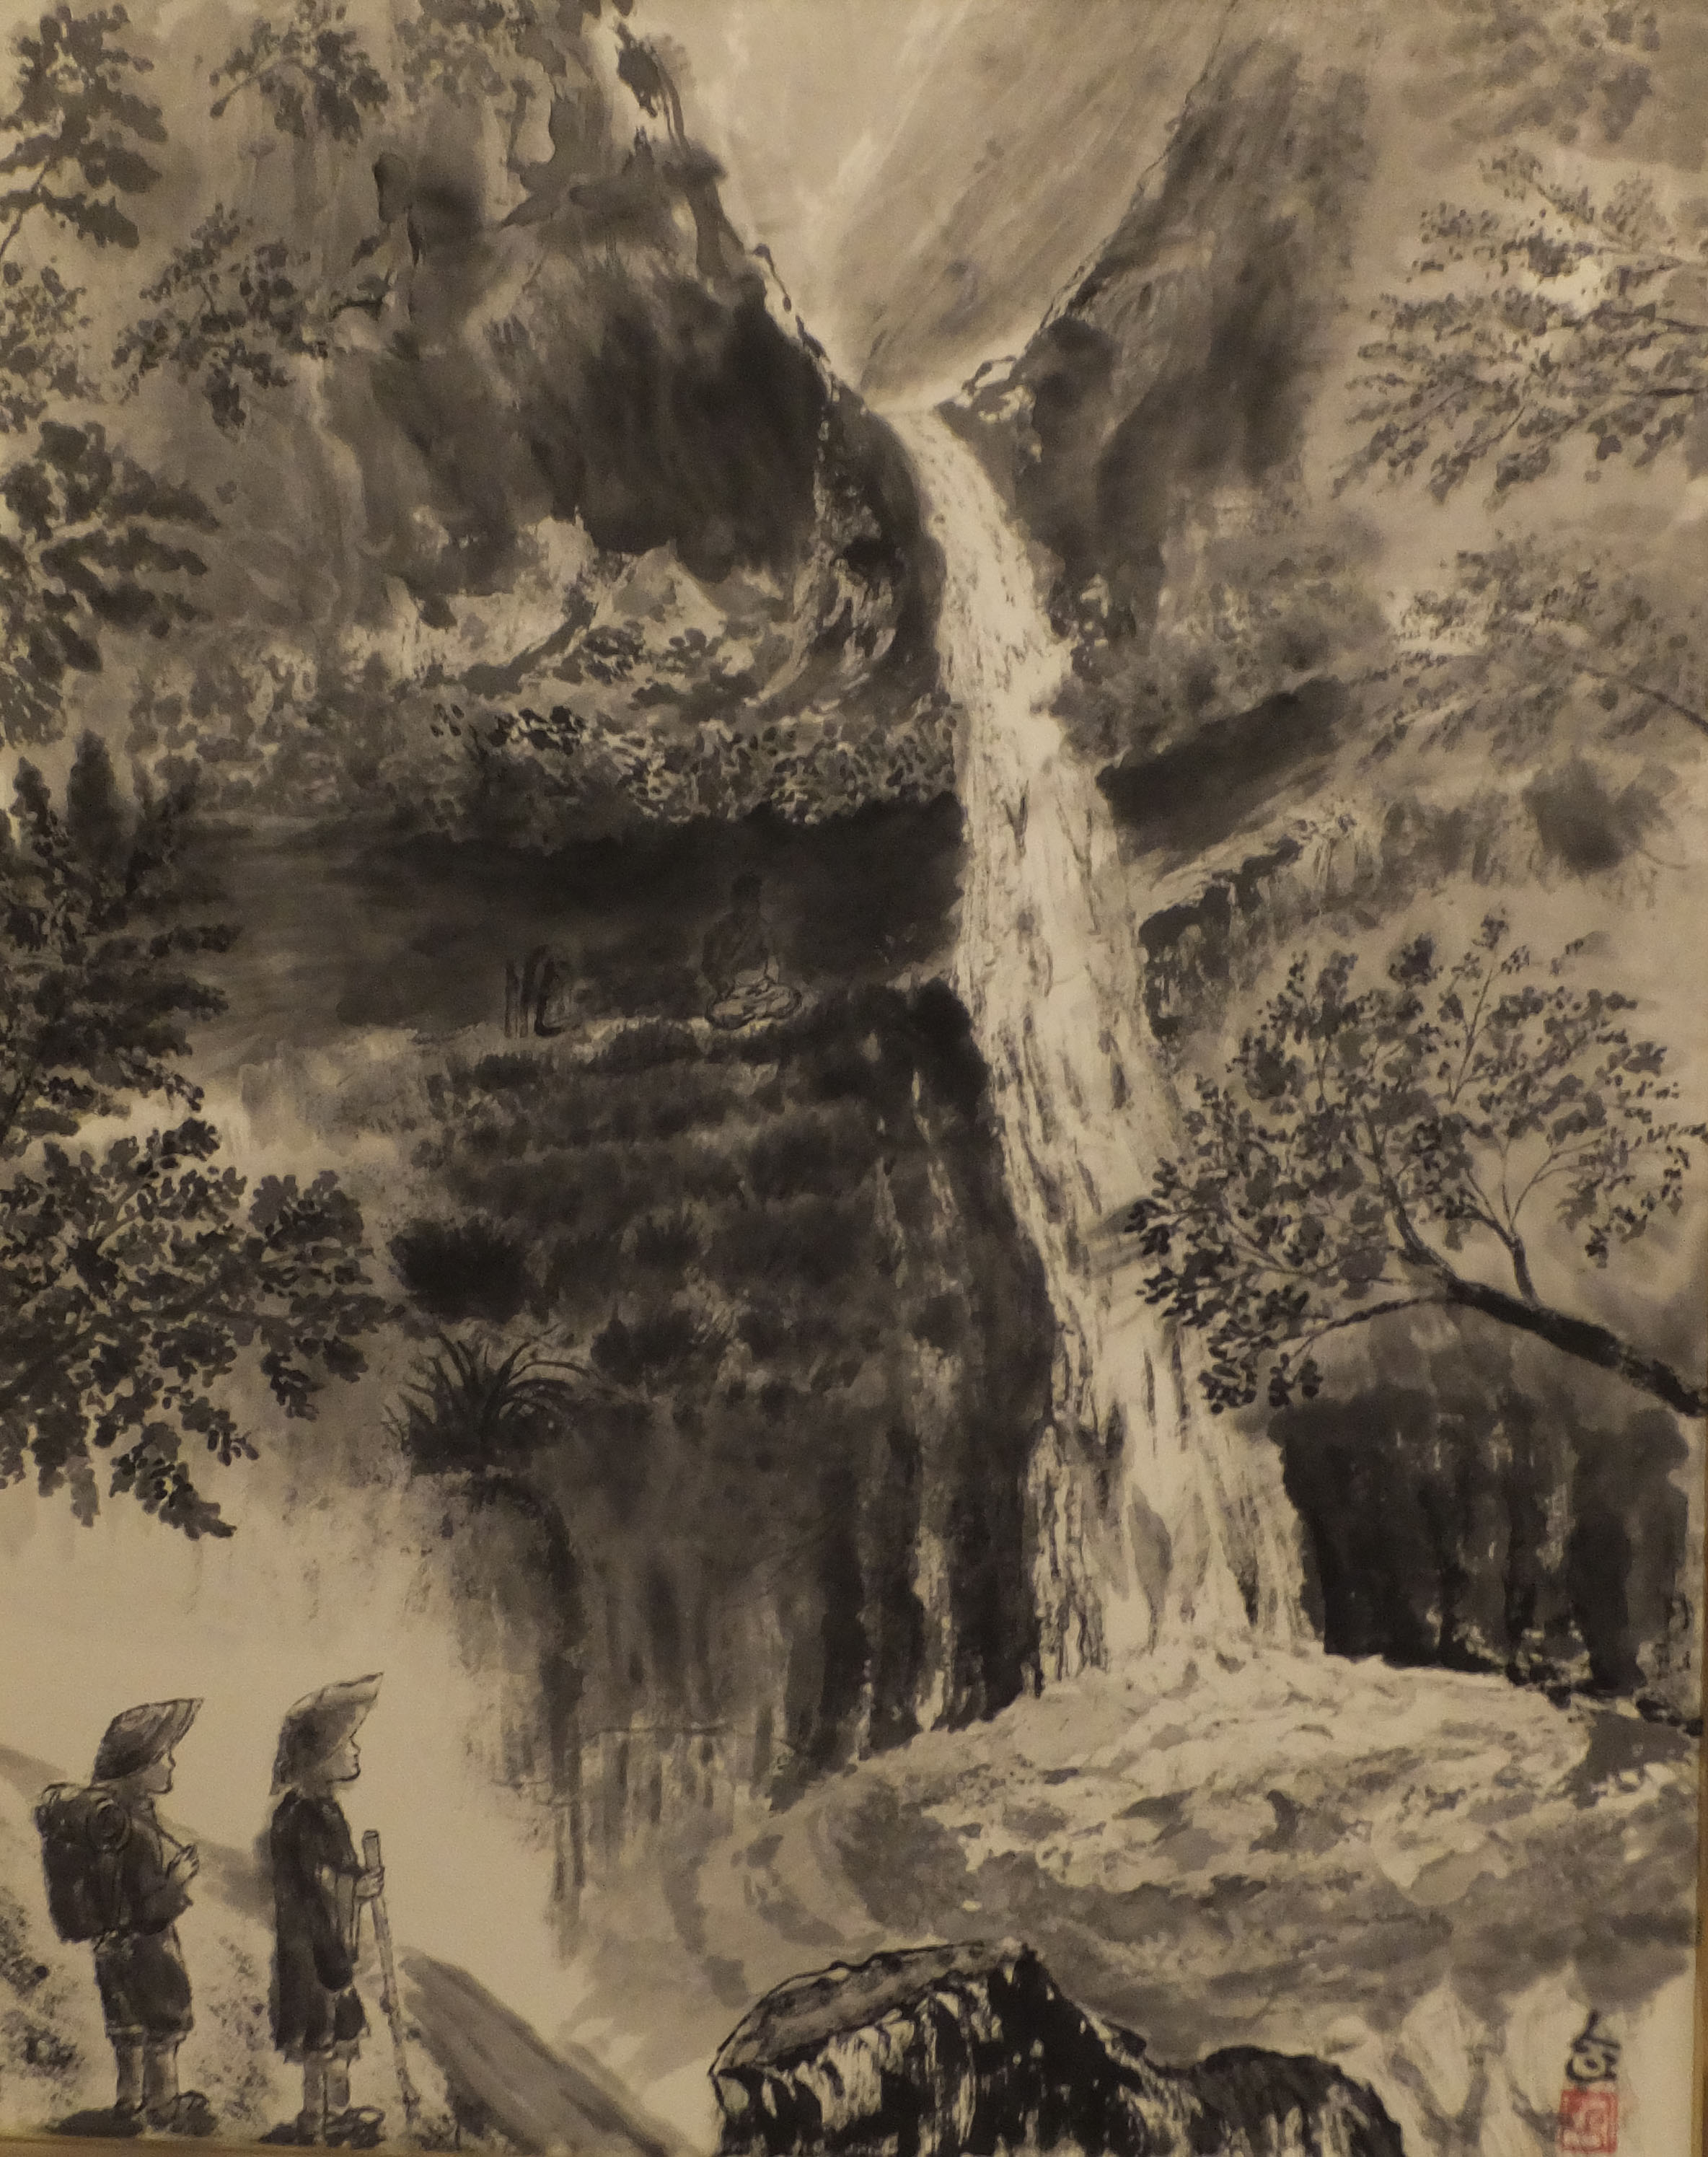 Zazen behind waterfall in early summer